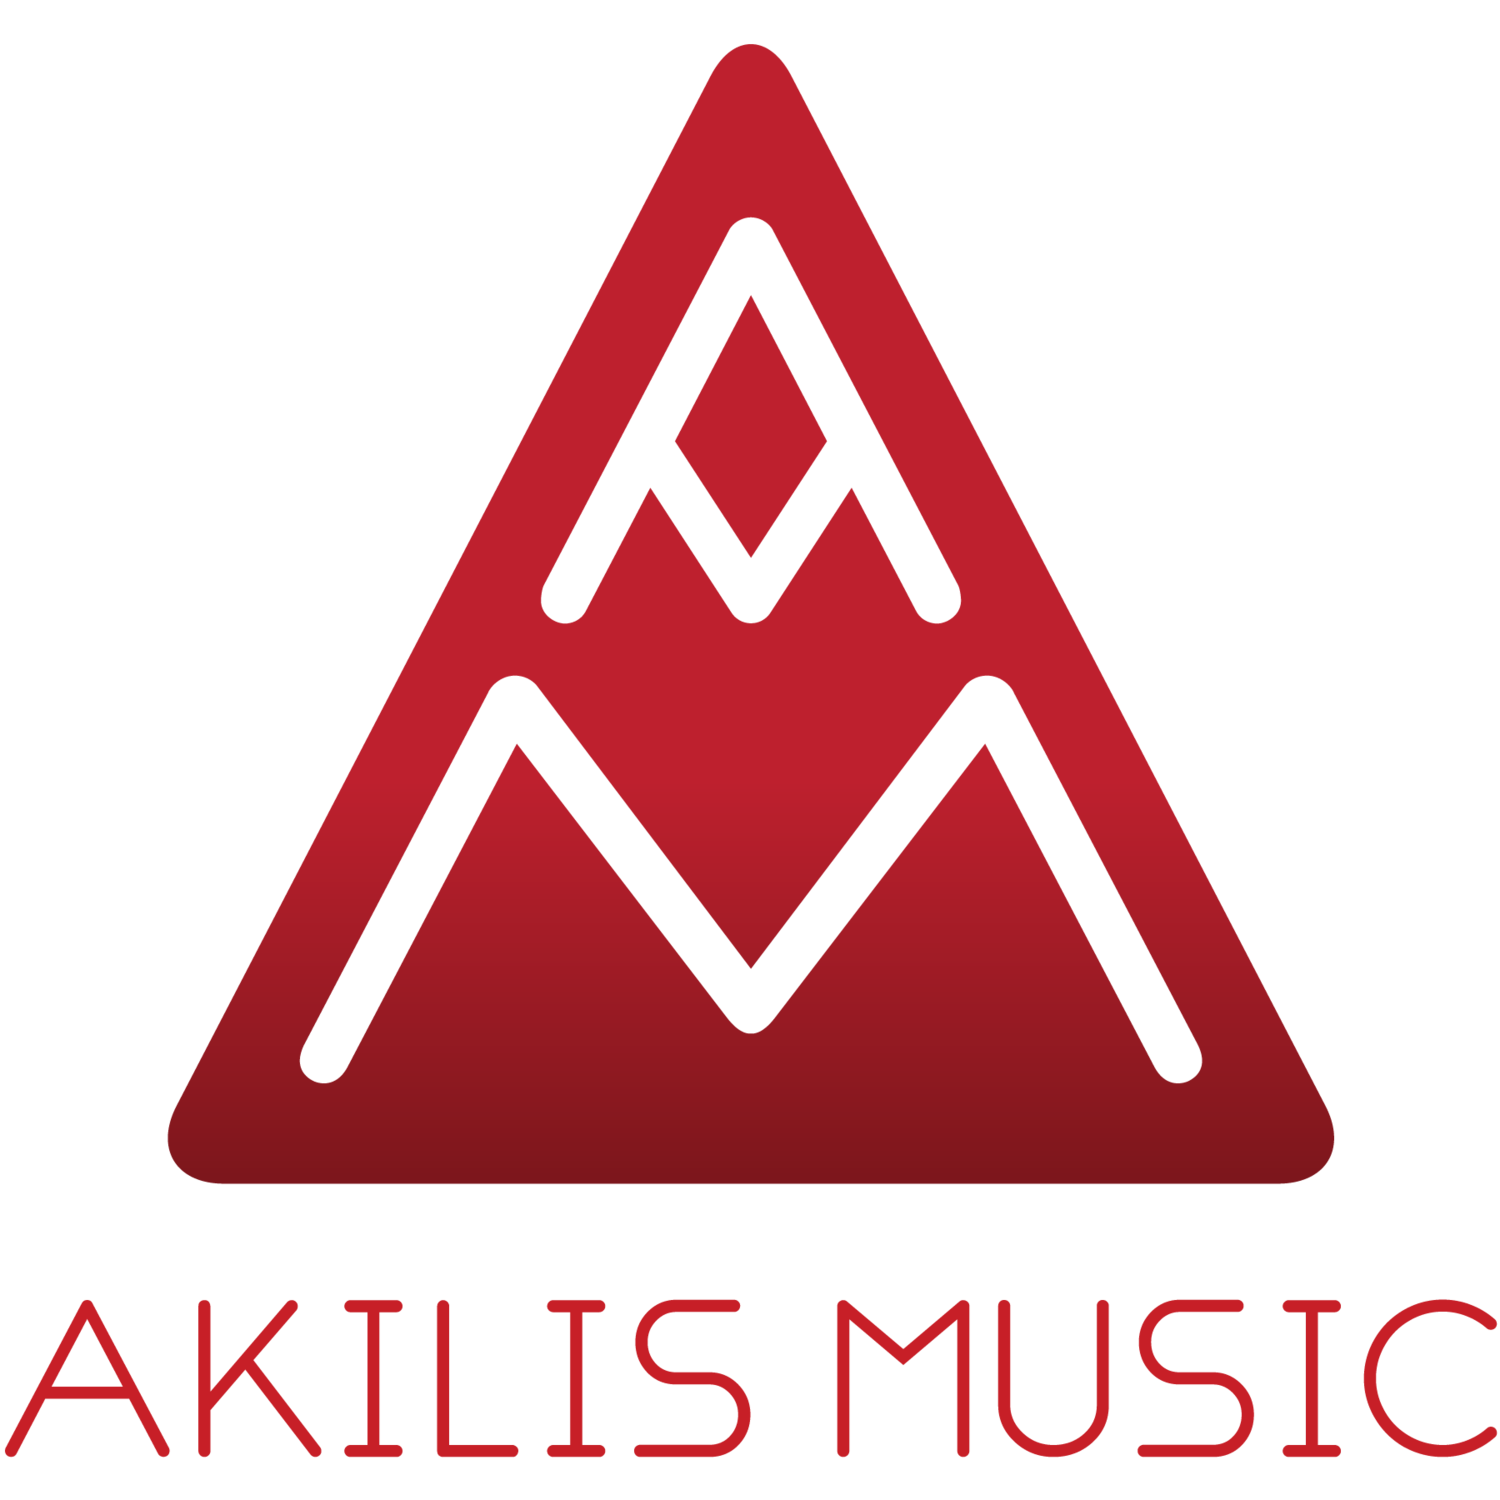 Akilis music